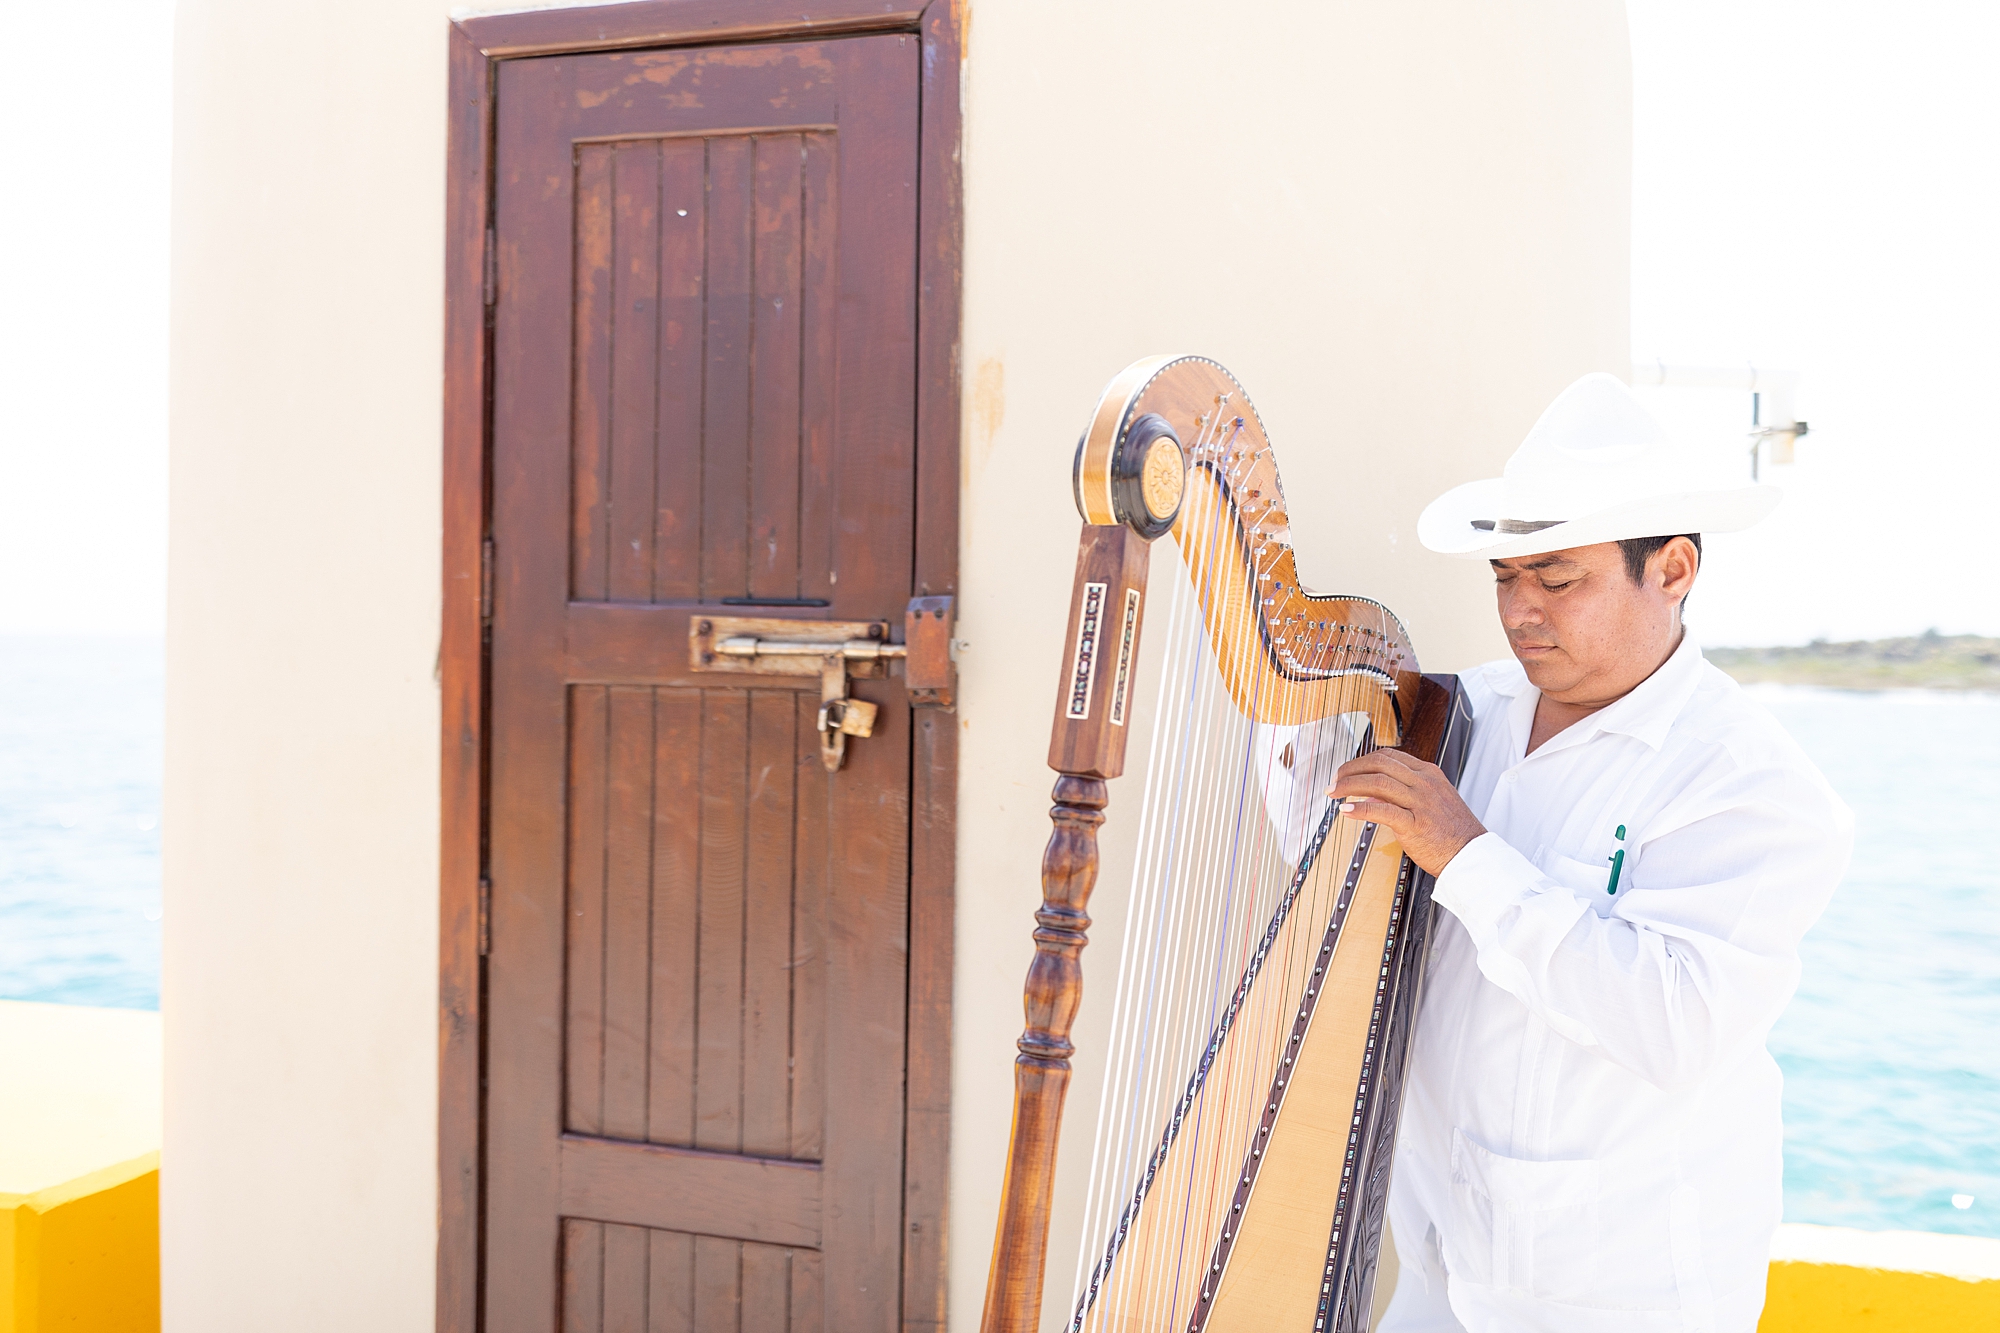 man playing harp